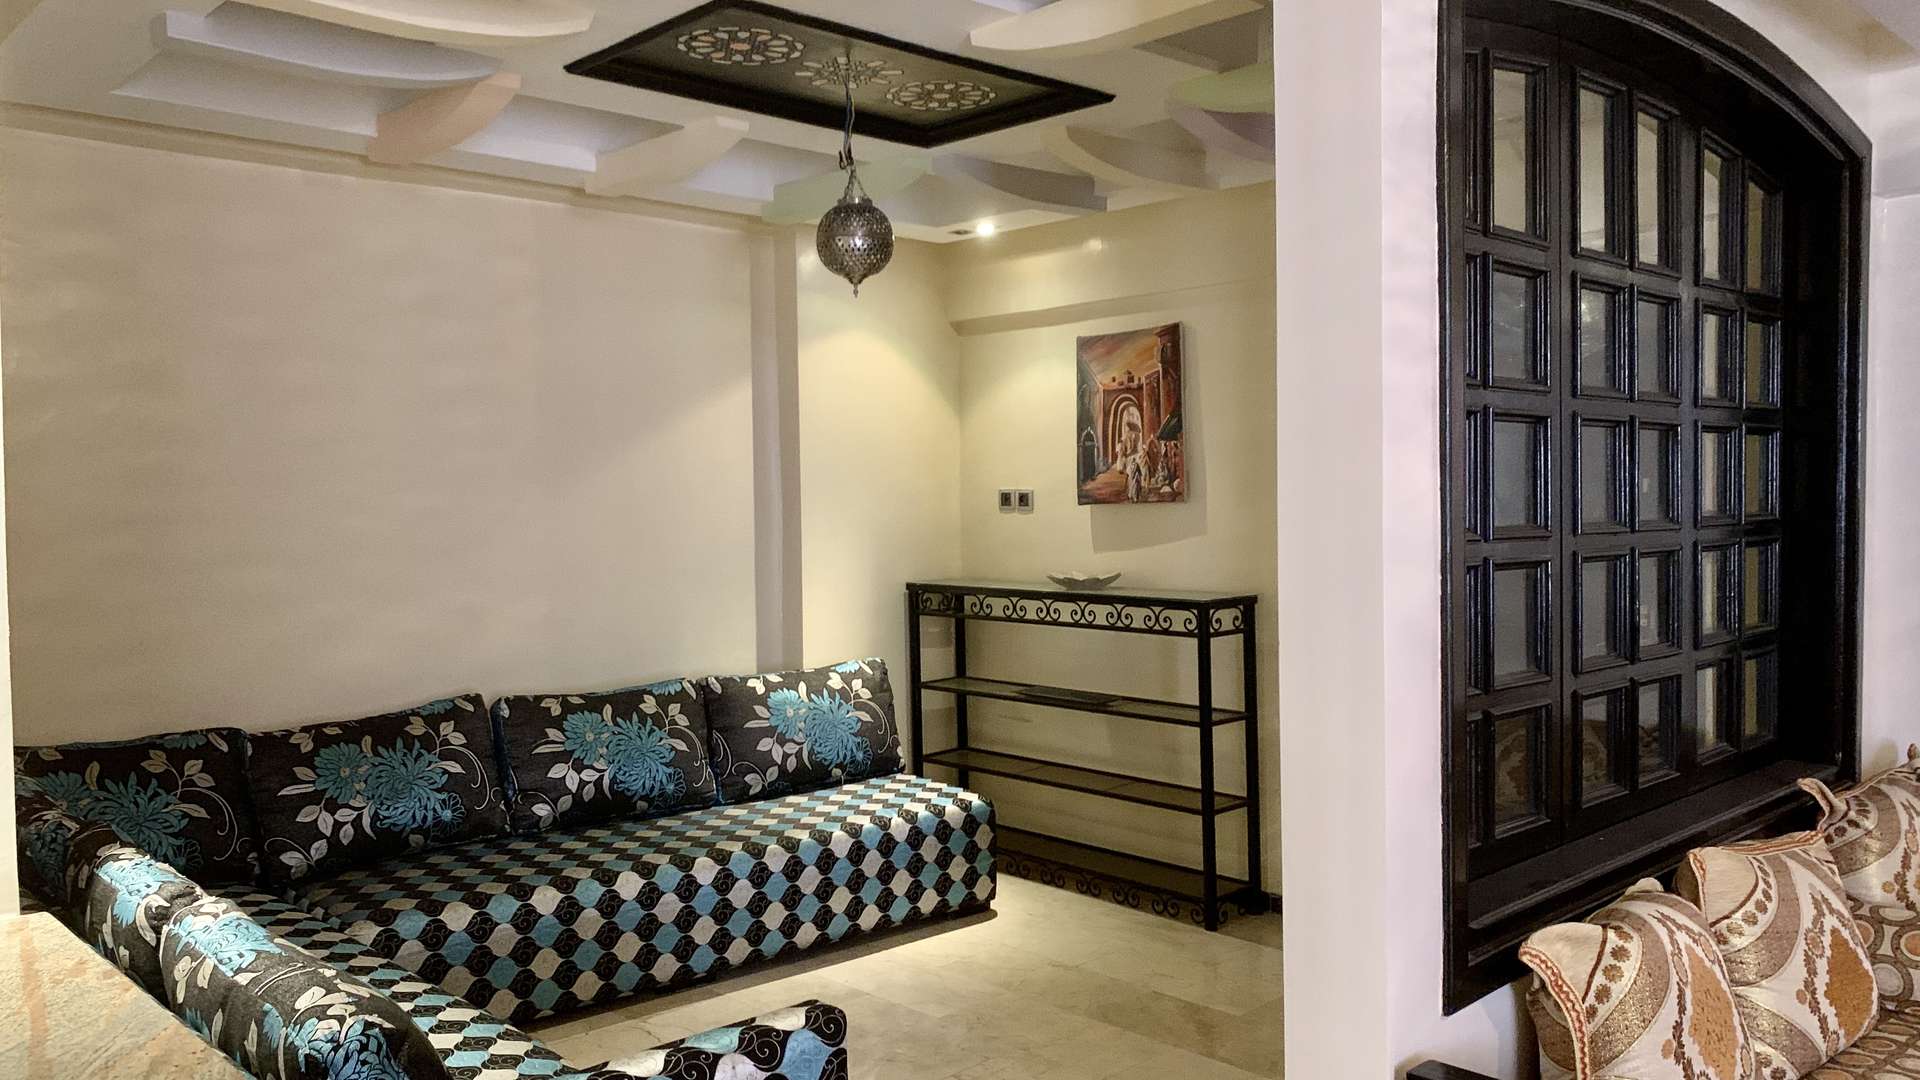 Vente,Appartement,Appartement à l'achat à Guéliz. Surface de 112.0 m². Prestation de conciergerie, air conditionné,Marrakech,Guéliz